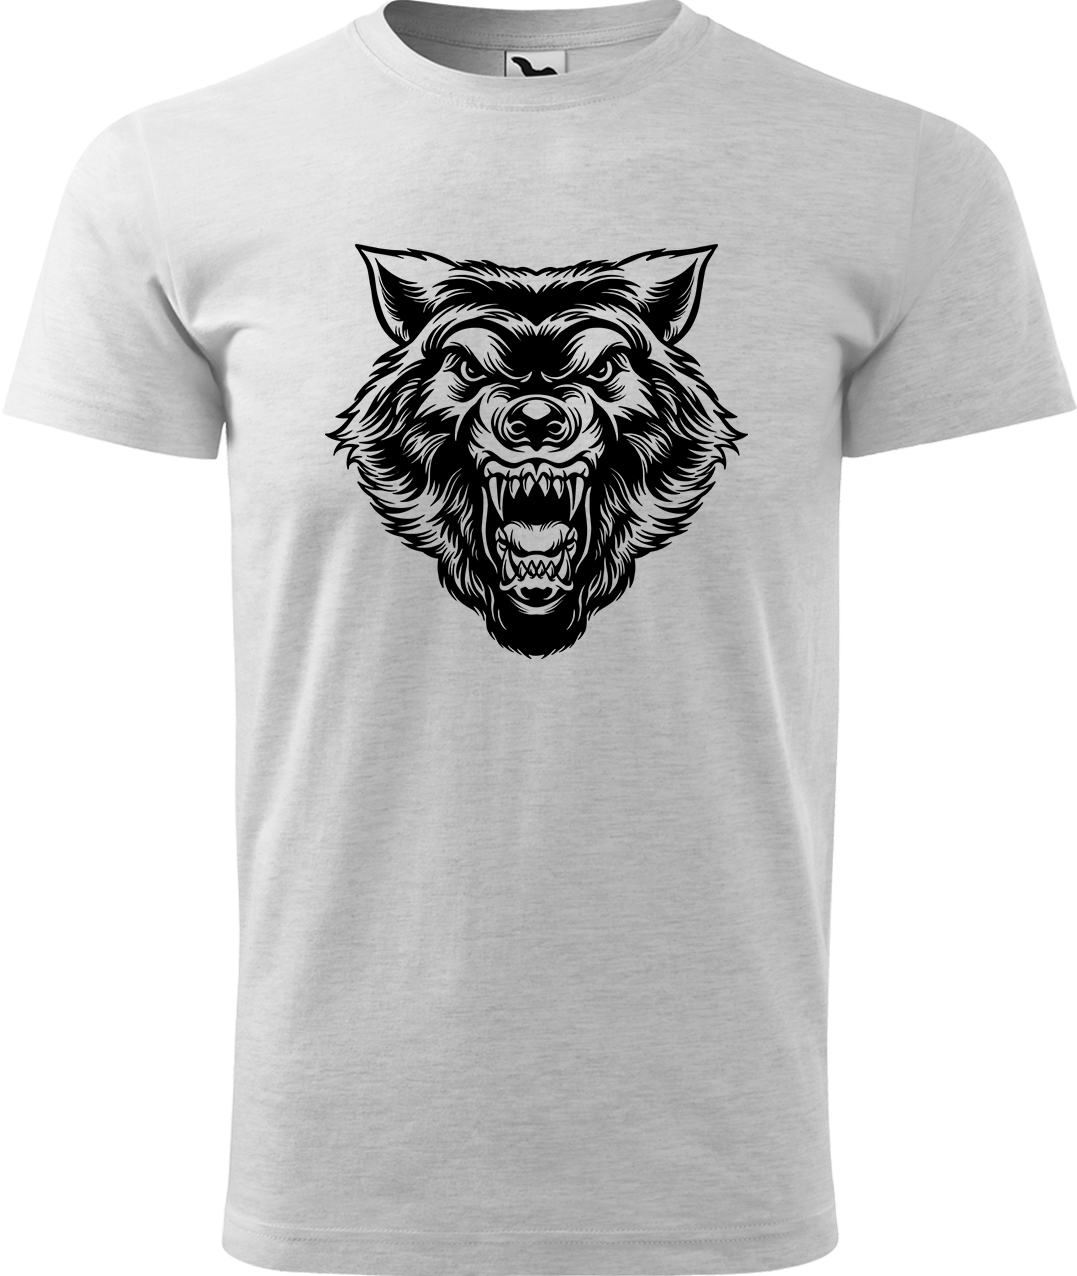 Pánské tričko s vlkem - Rozzuřený vlk Velikost: L, Barva: Světle šedý melír (03), Střih: pánský